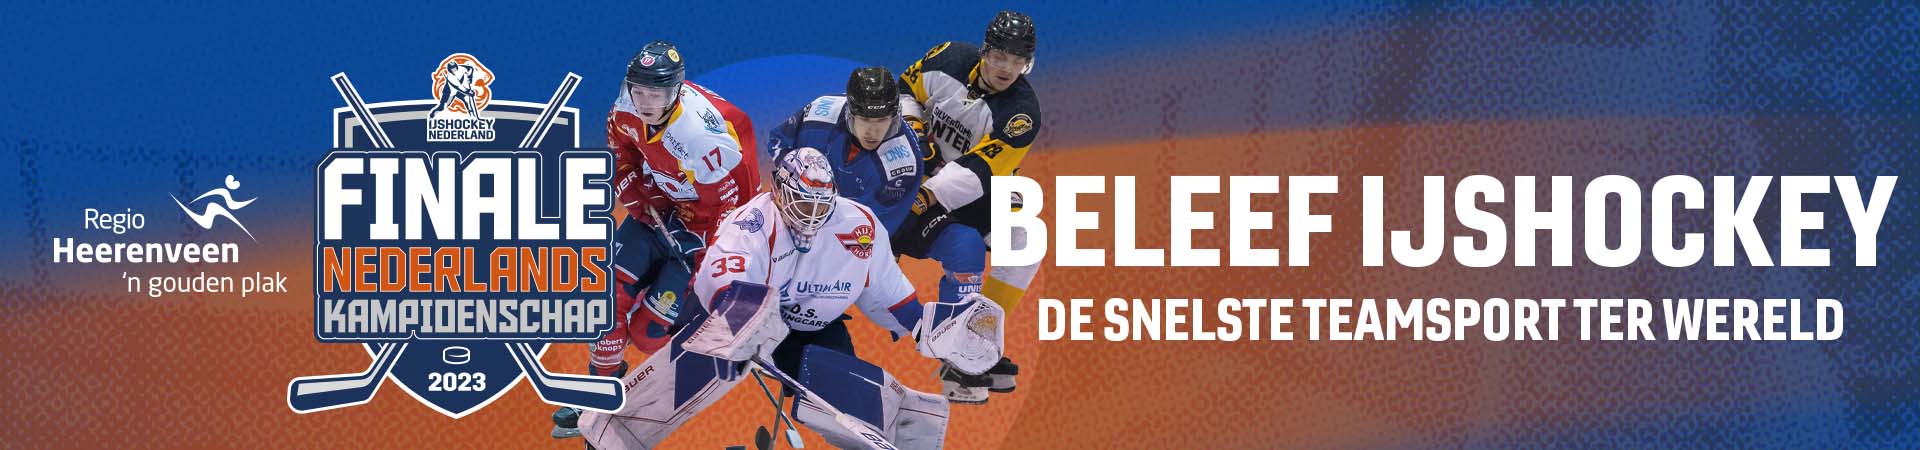 Finale kampioenschap van Nederland ijshockey 2023